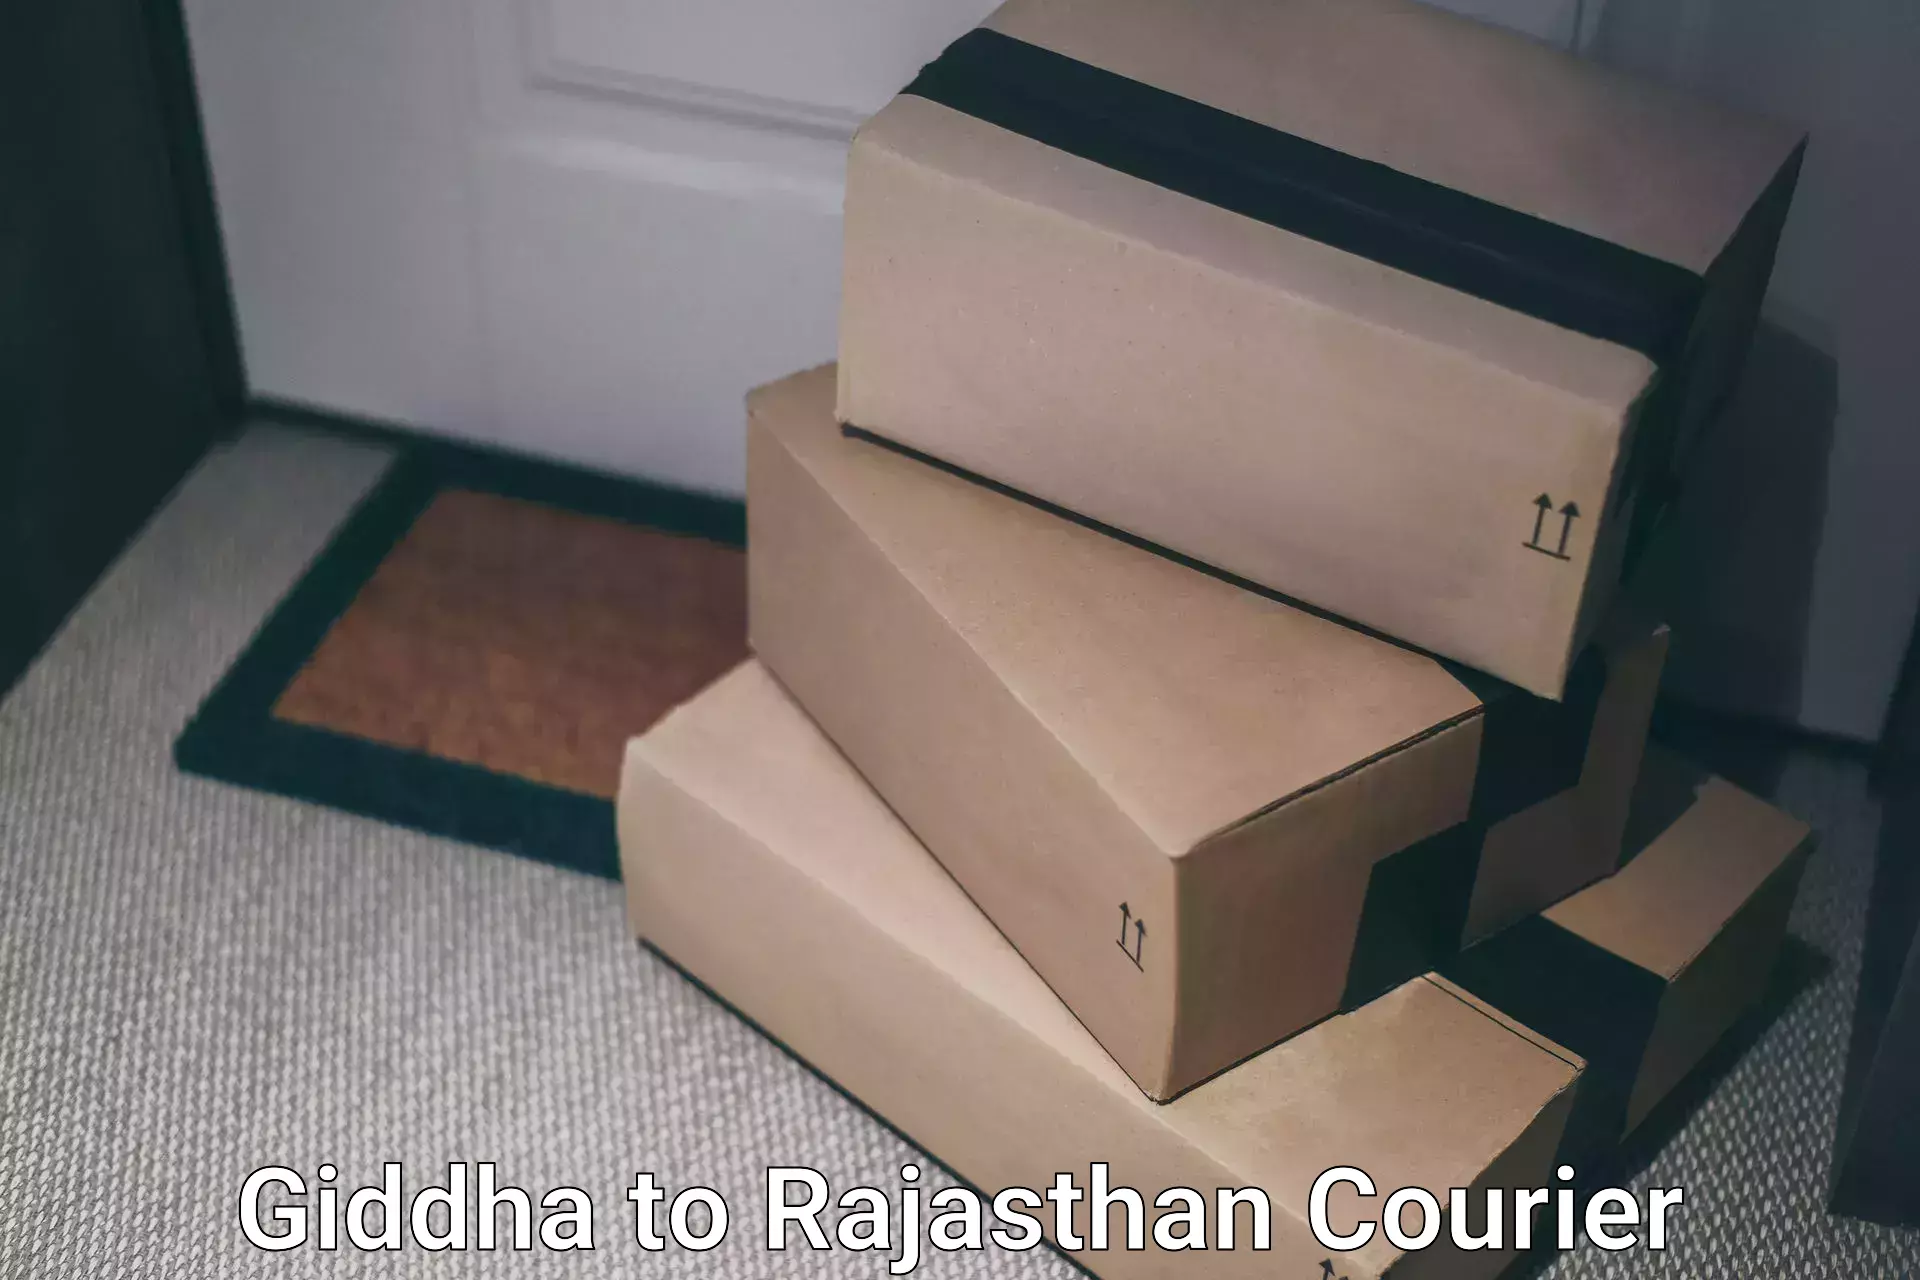 Express package handling Giddha to Rajasthan